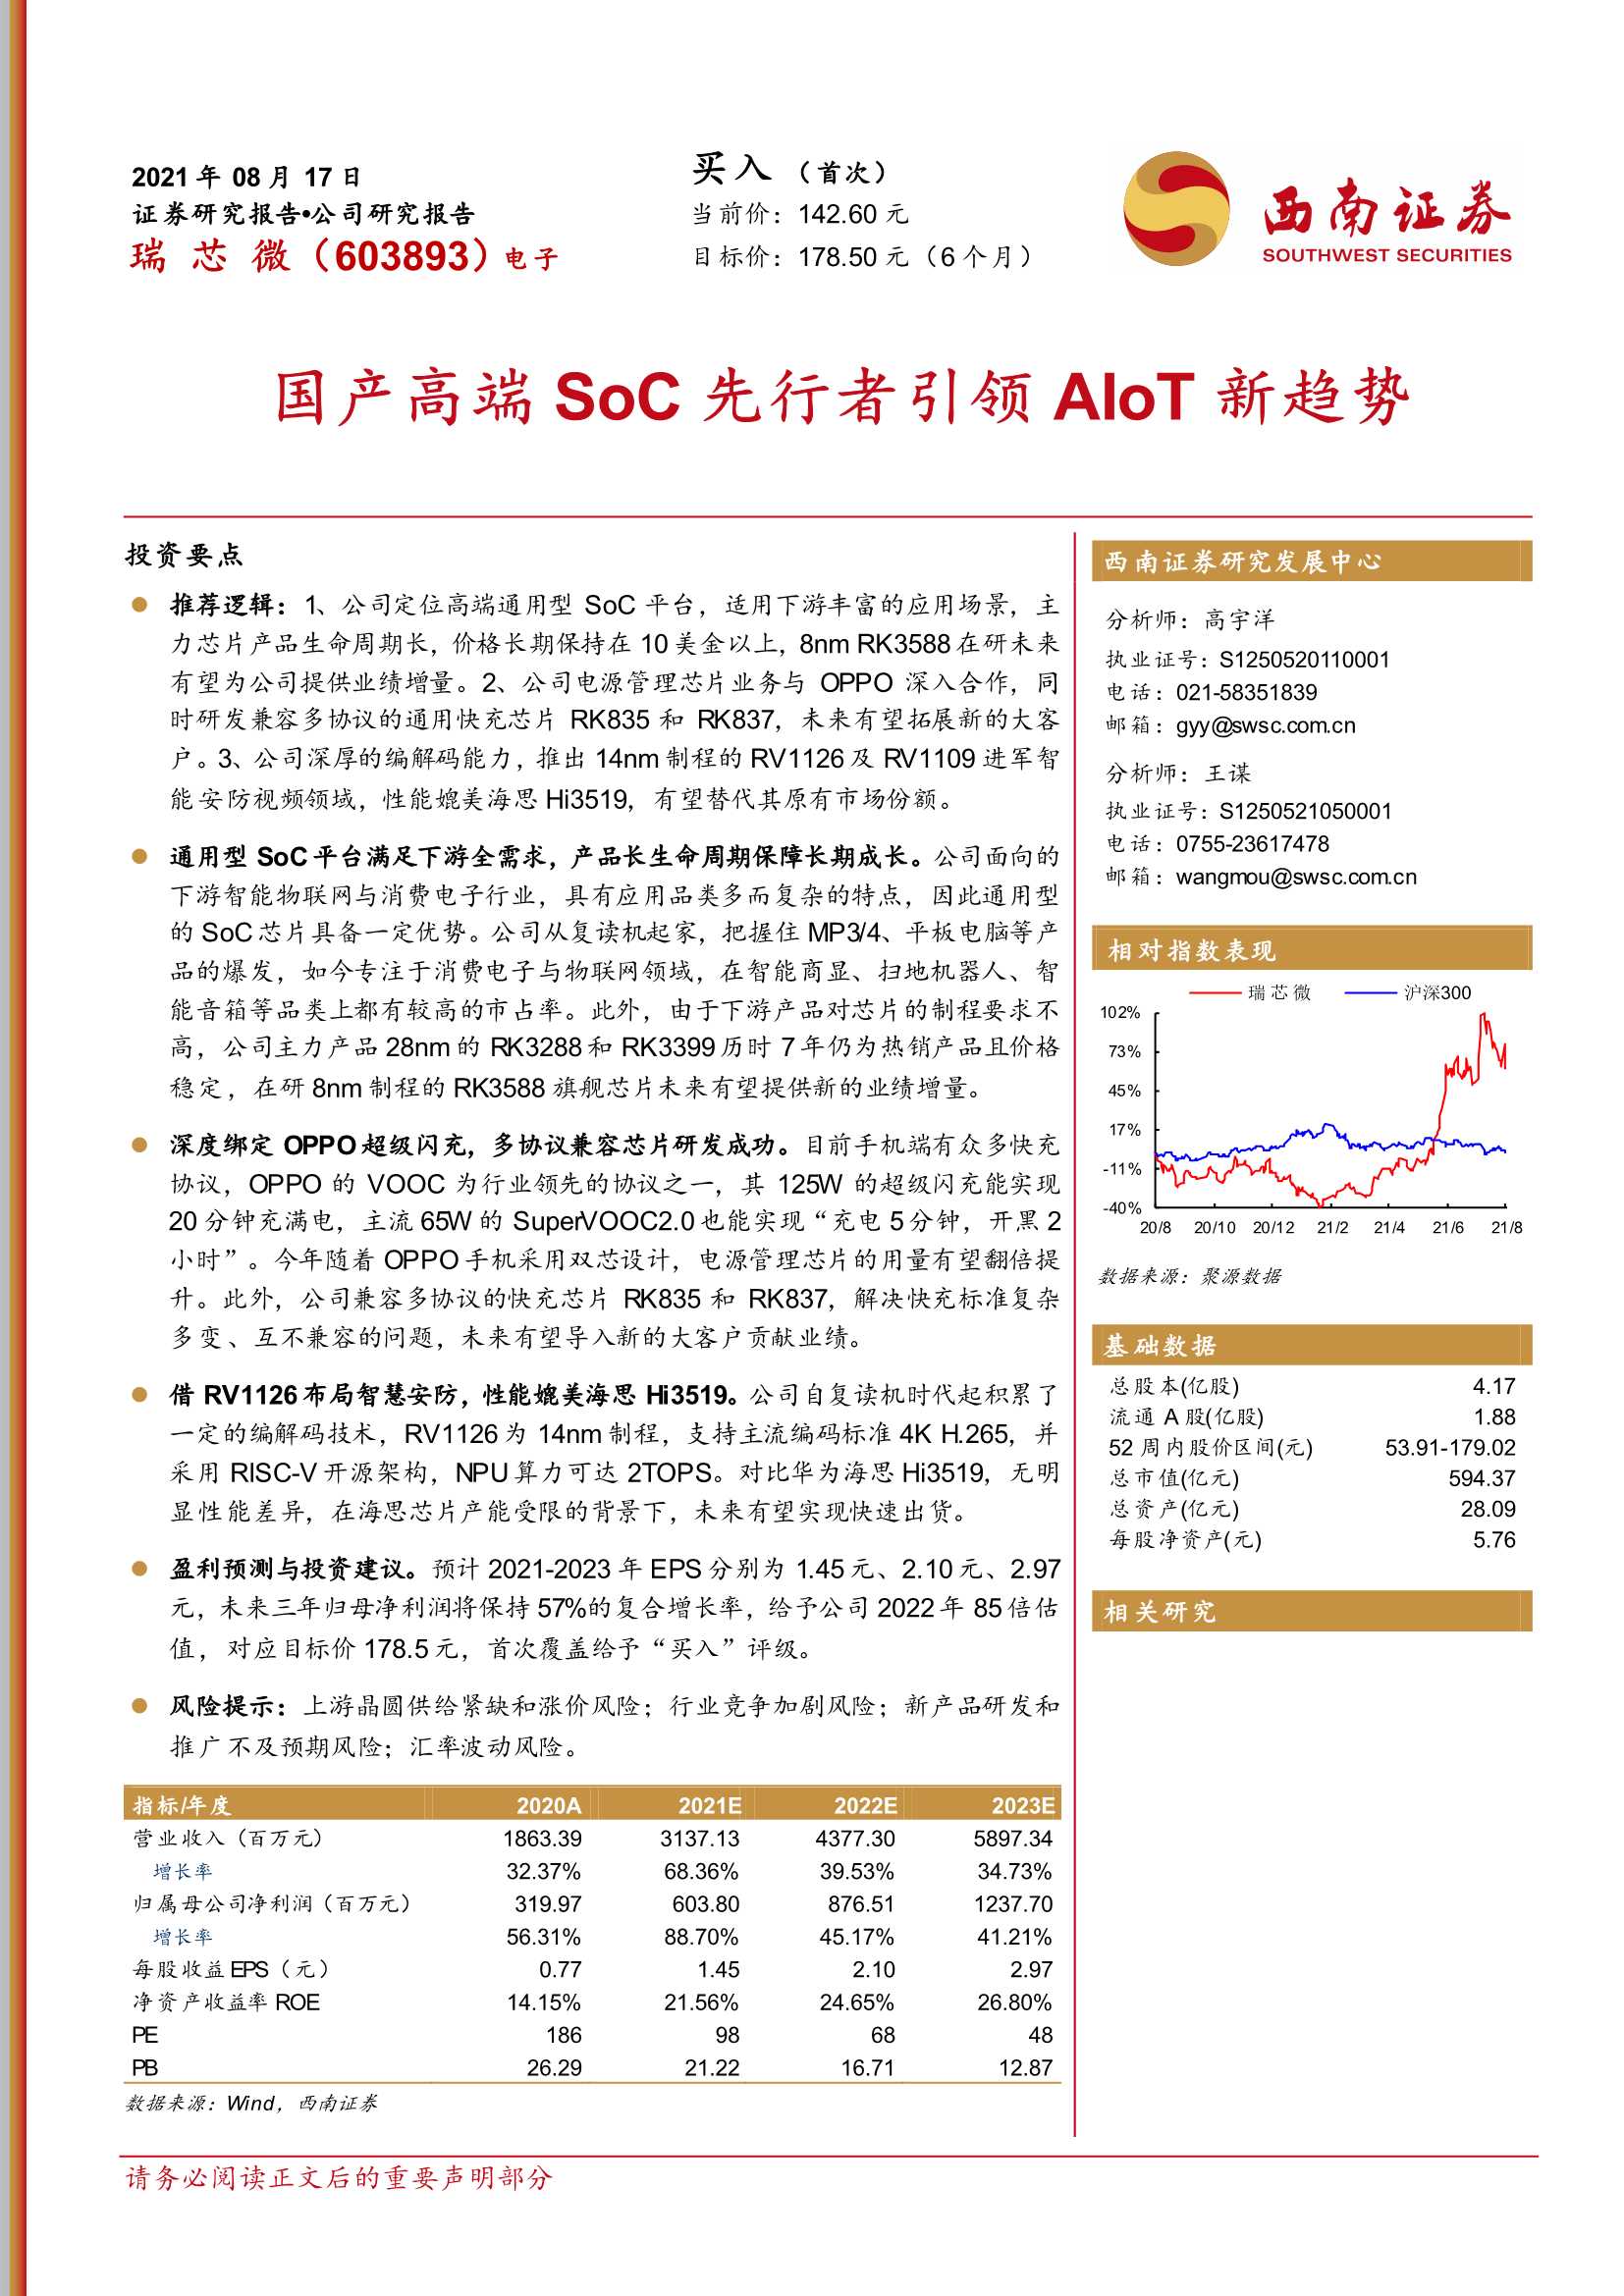 西南证券-瑞芯微-603893-国产高端SoC先行者引领AIoT新趋势-20210817-34页